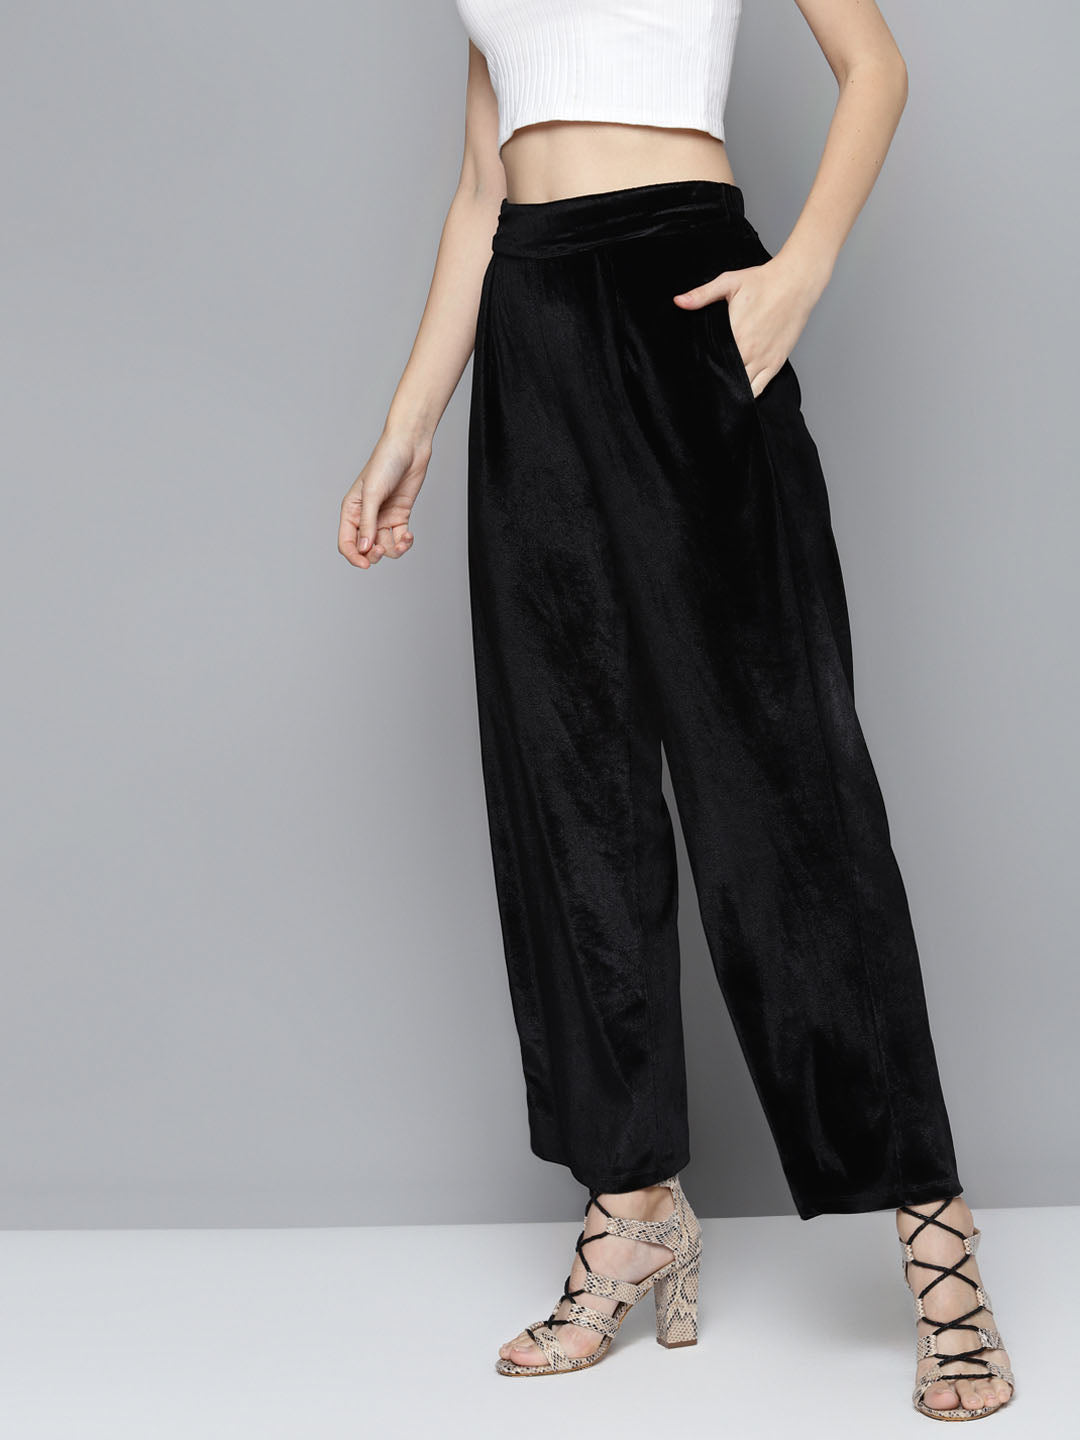 19 Best Velvet trousers ideas  style, how to wear, velvet trousers